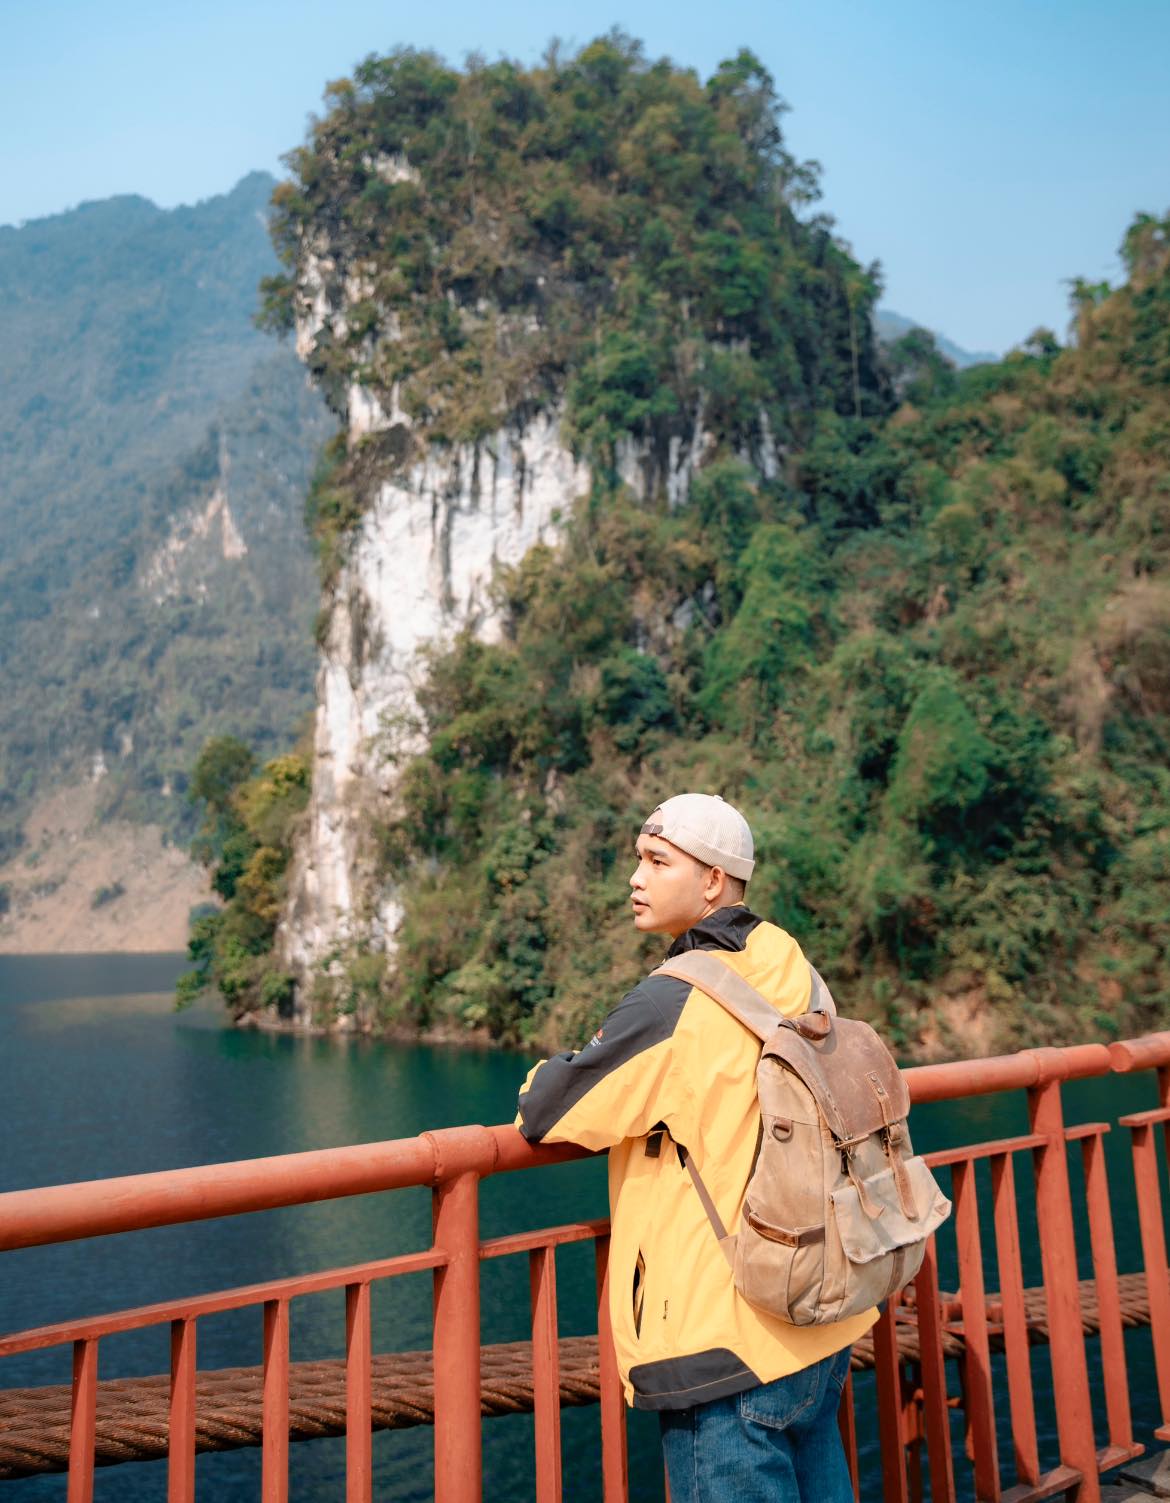 Phát hiện cây cầu treo đẹp như tranh vẽ giữa núi rừng Điện Biên, nhiều người không ngờ đây là khung cảnh tại Việt Nam- Ảnh 9.